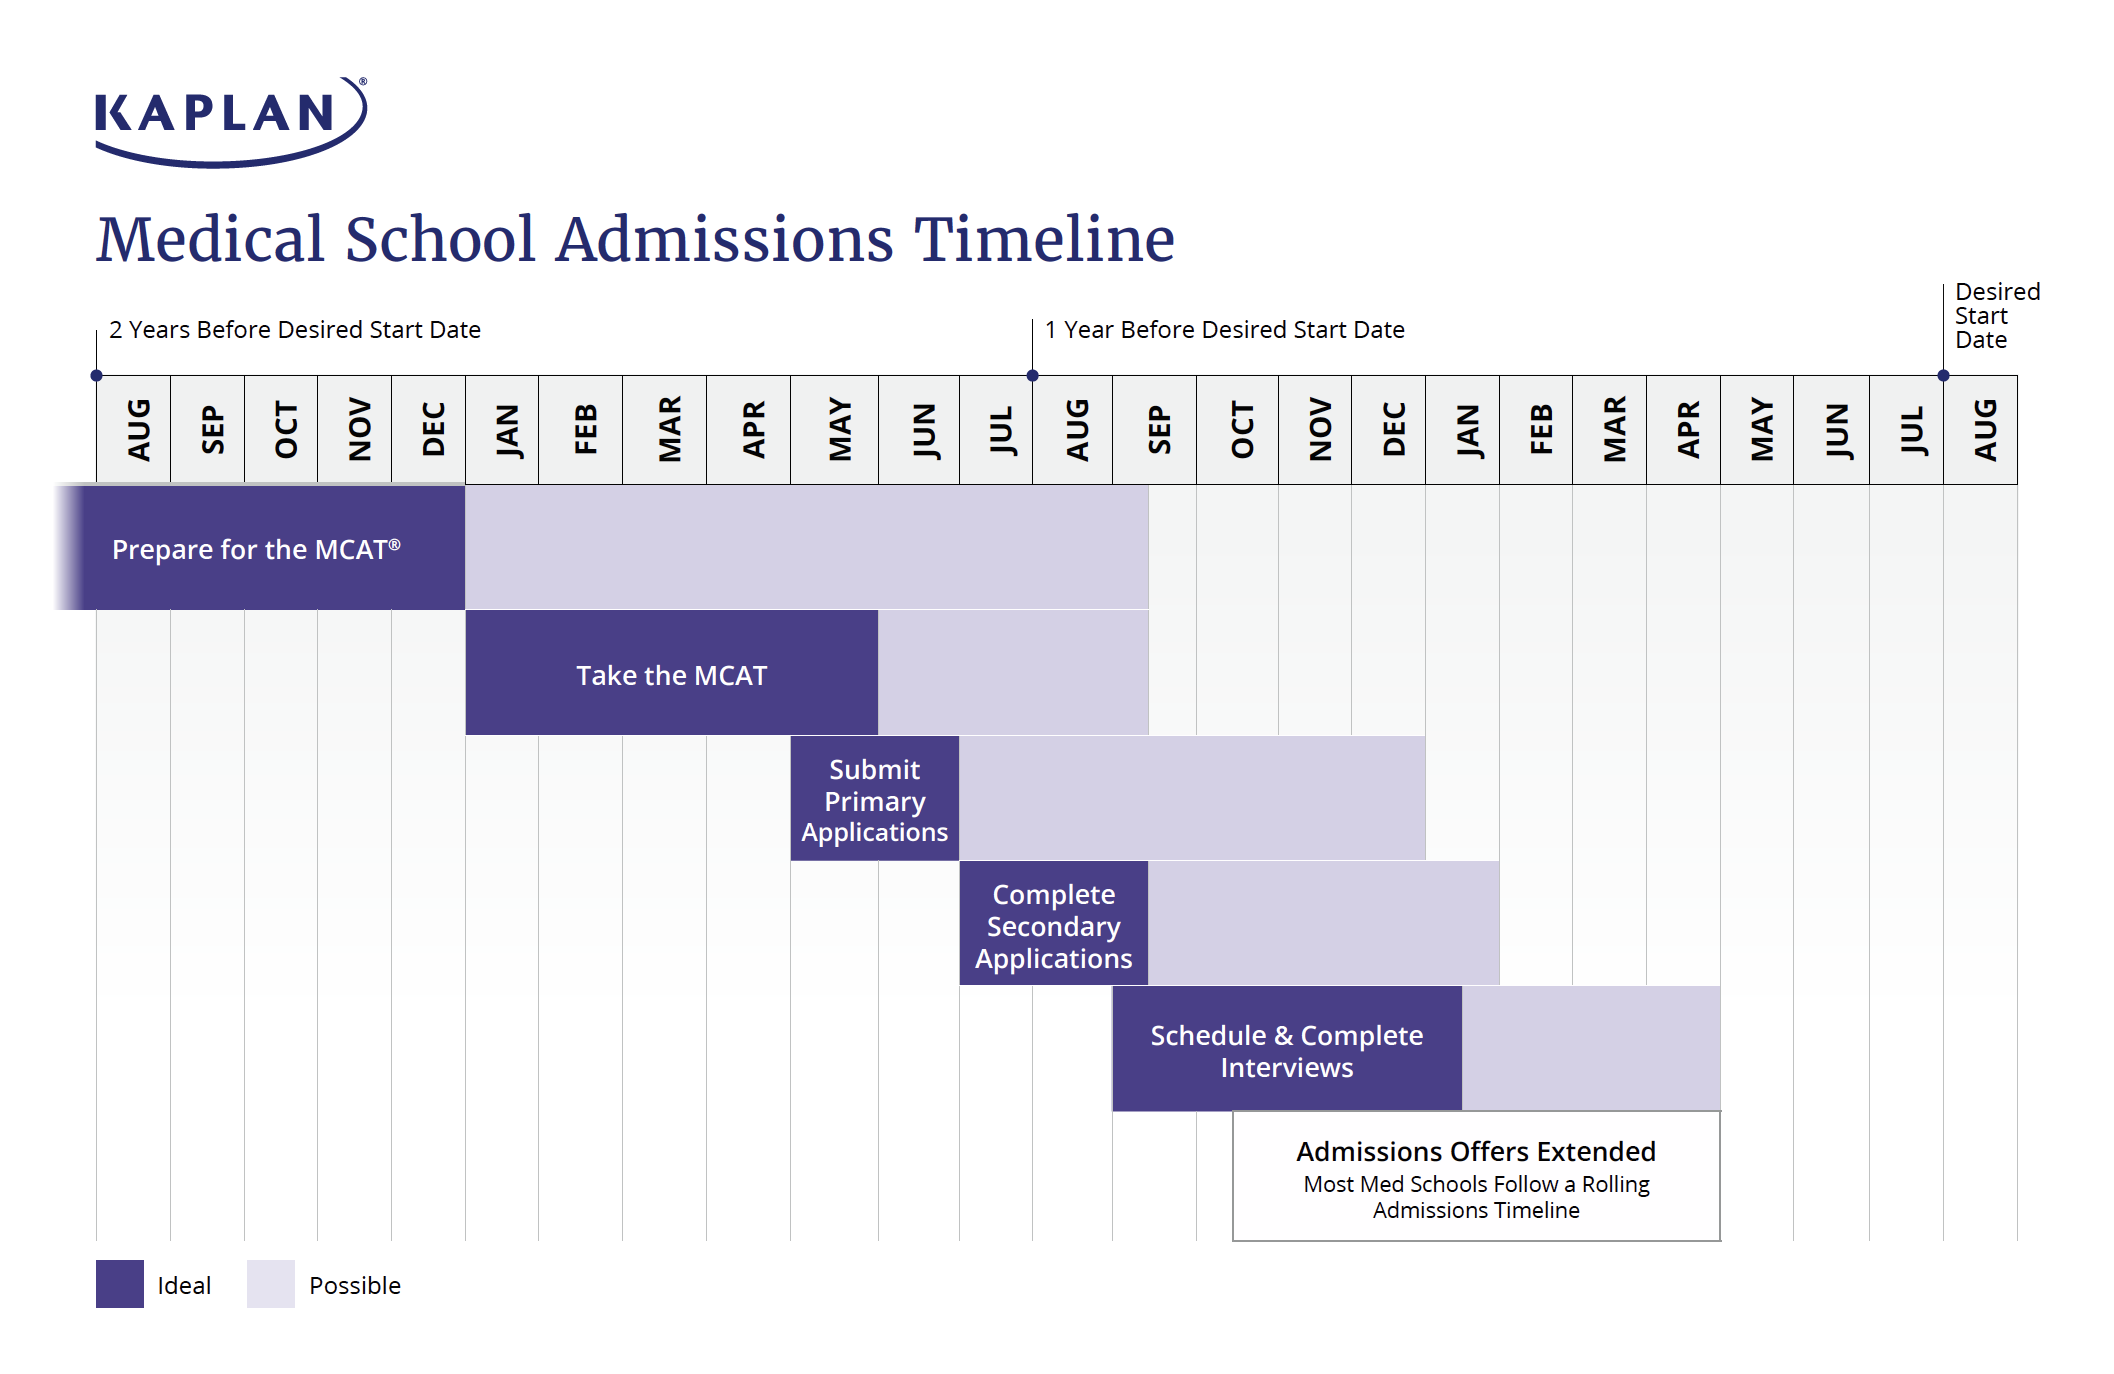 Timeline for medical school admissions.